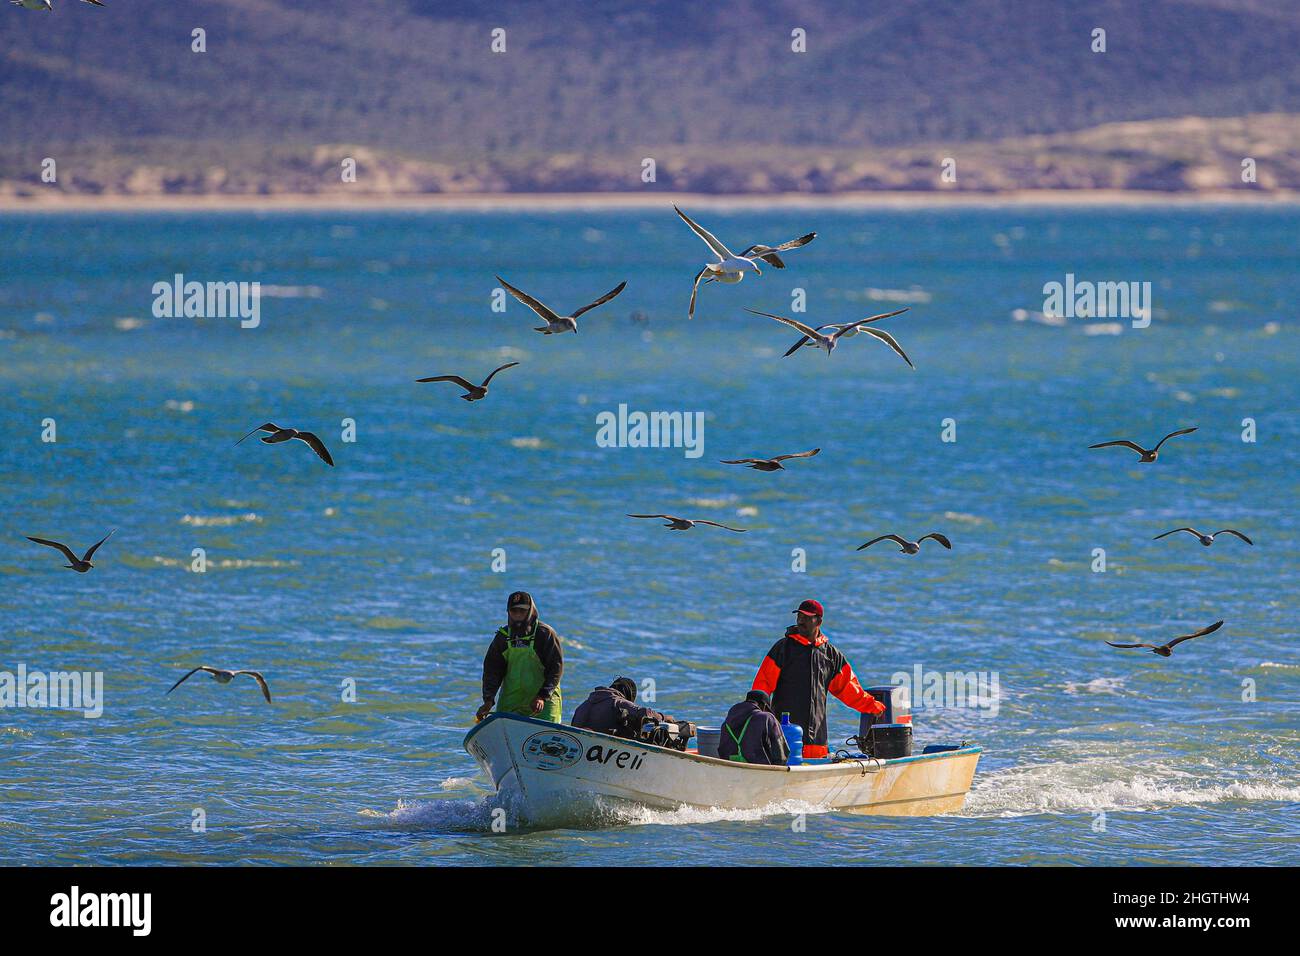 Fishing boat, fisherman's panga in Kino Bay surrounded by seagulls. Sonora Mexico. Bote de pesca, panga de pescadores en bahia Kino rodeado por gaviotas. Sonora Mexico.  © (photo by Luis Gutierrez/Norte Photo) Stock Photo